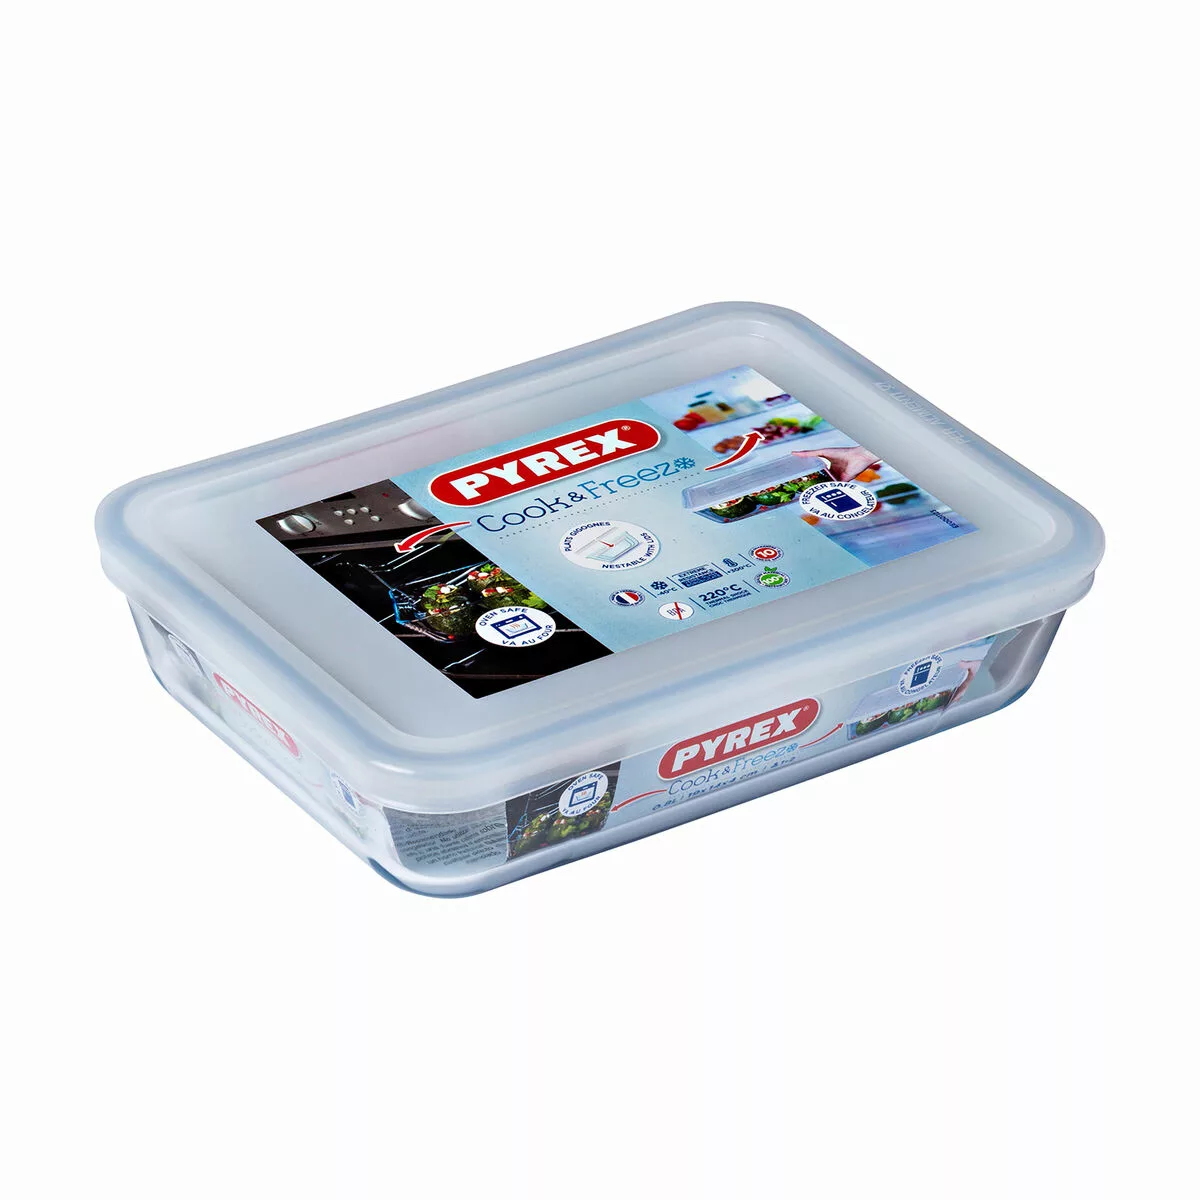 Rechteckige Lunchbox Mit Deckel Pyrex Cook & Freeze 22,5 X 17,5 X 6,5 Cm 1, günstig online kaufen